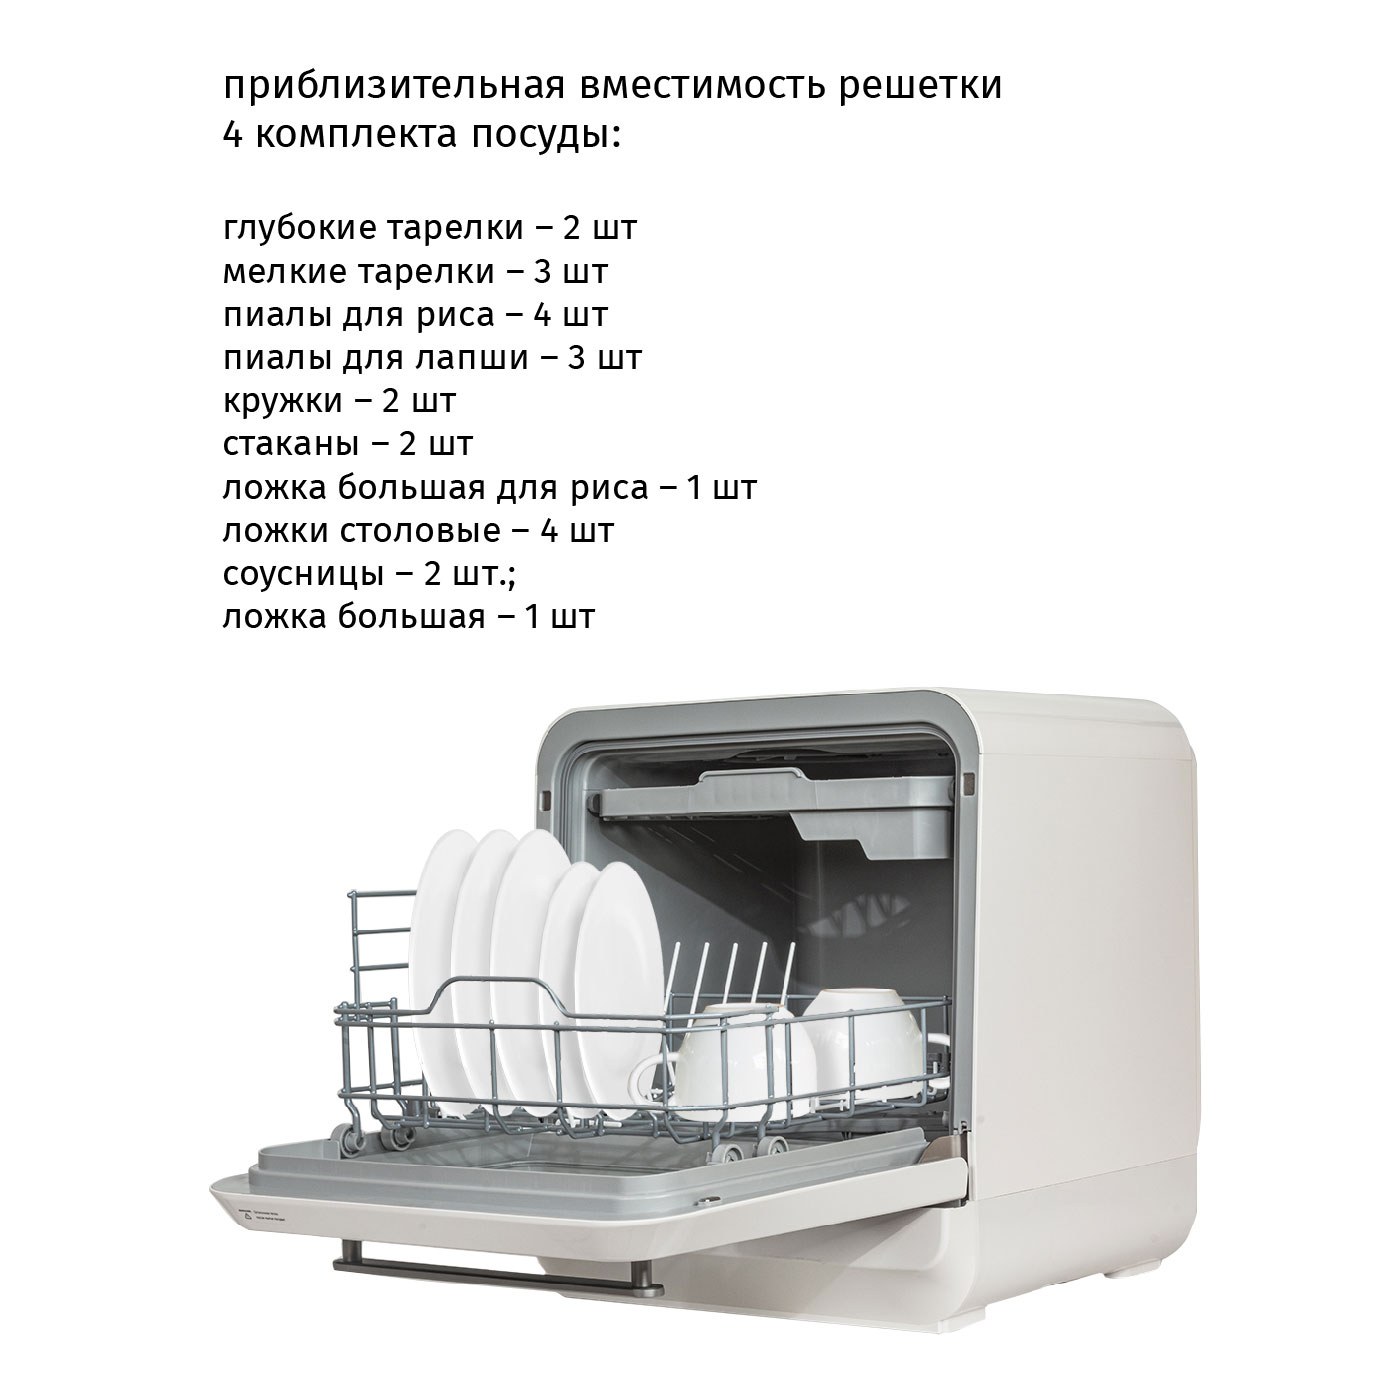 Настольная посудомоечная машина Pioneer DWM05